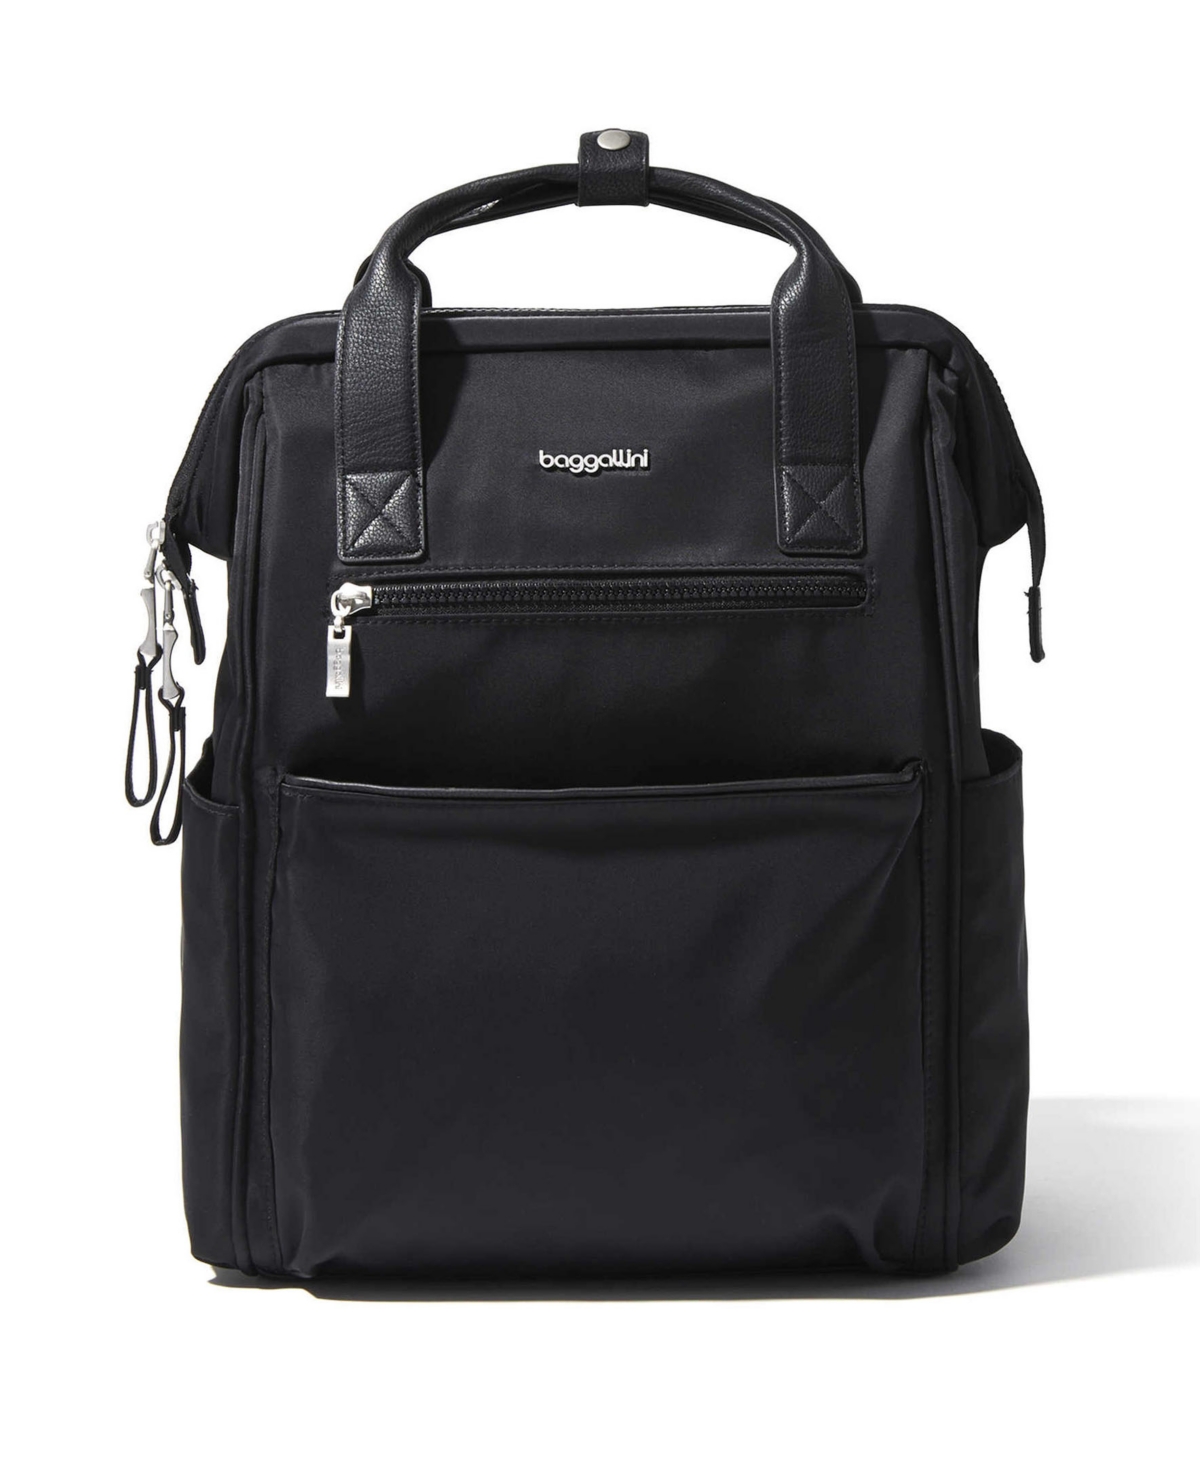 Baggallini Soho Backpack In Black - Nylon